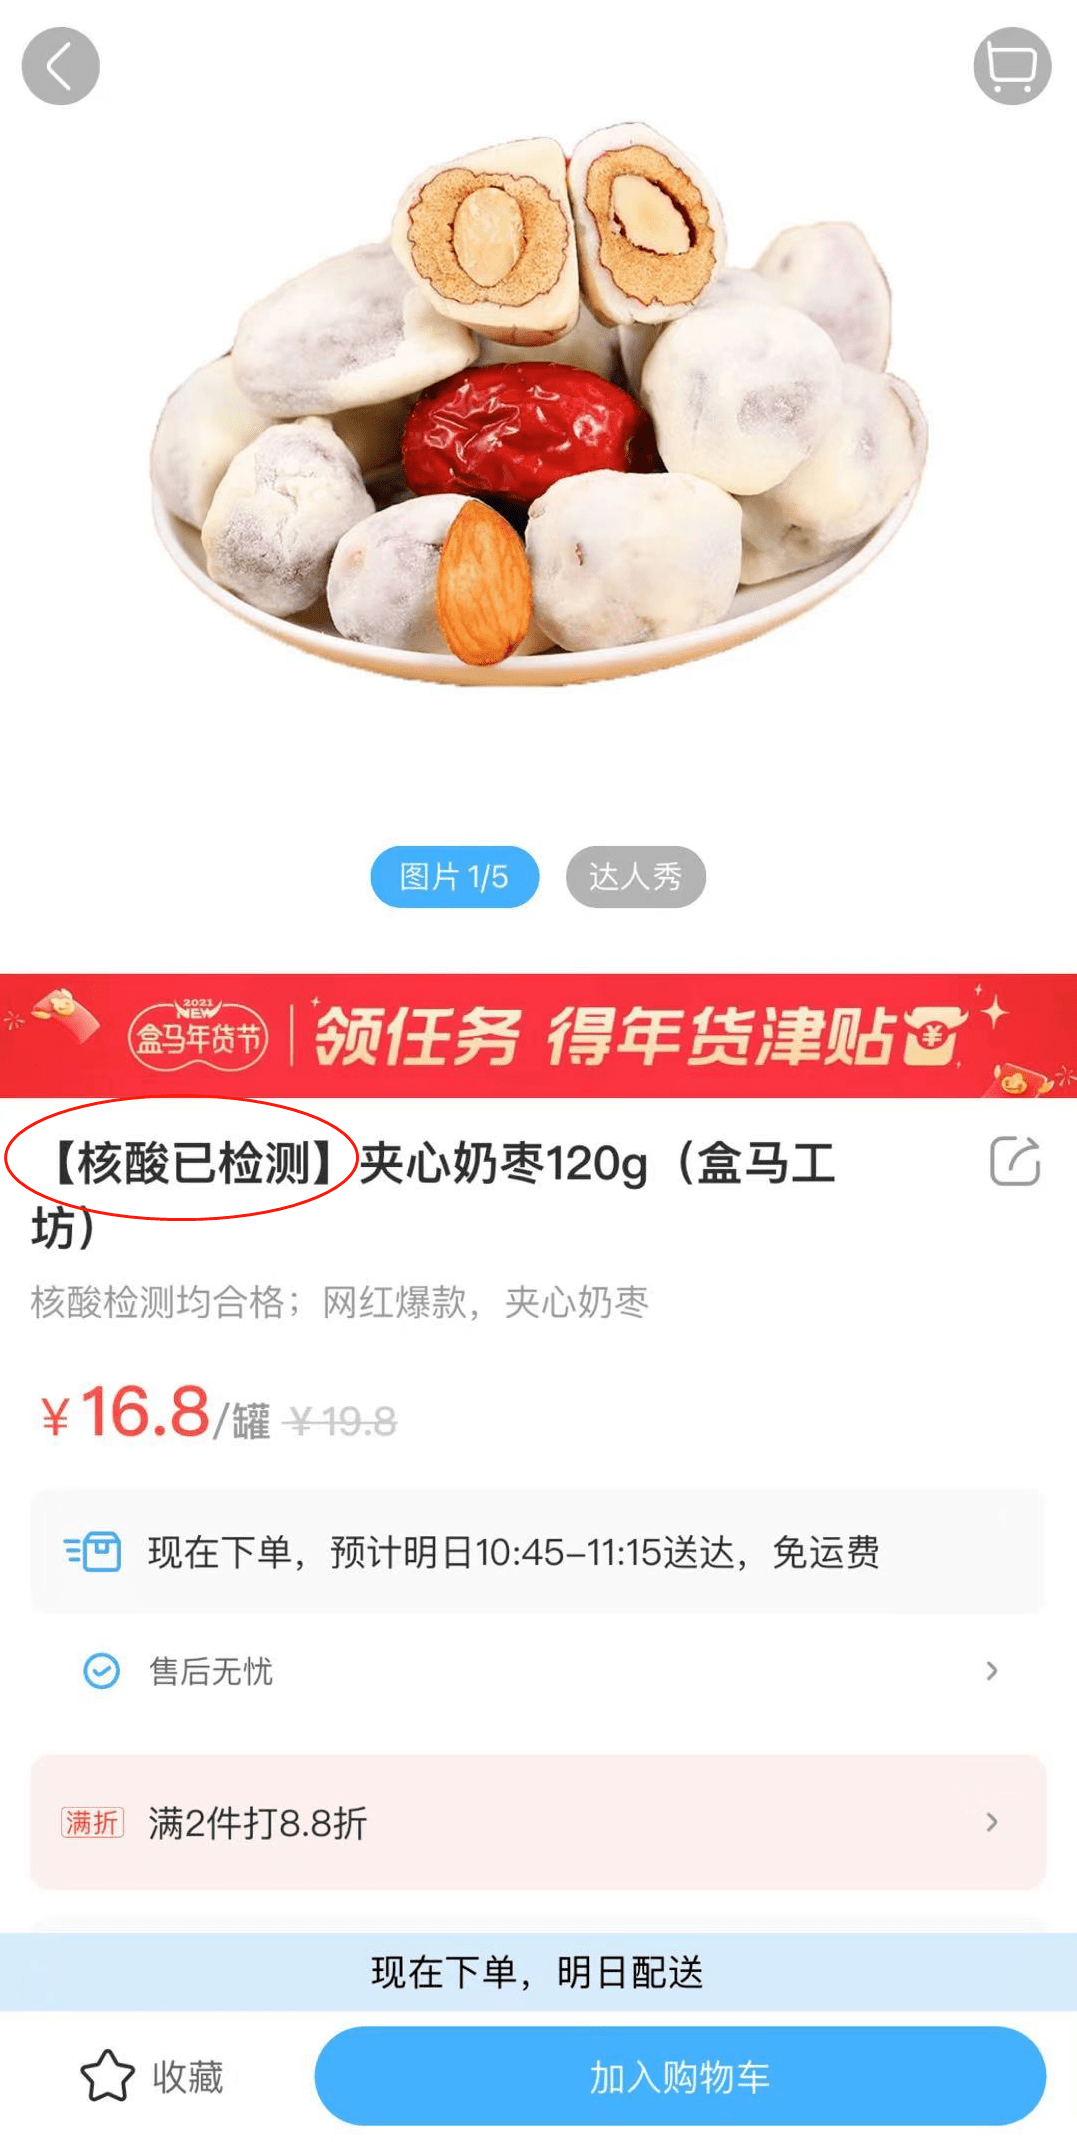 包括上海山东涉疫奶枣已流入20多个省市误吃了怎么办最新通报↗